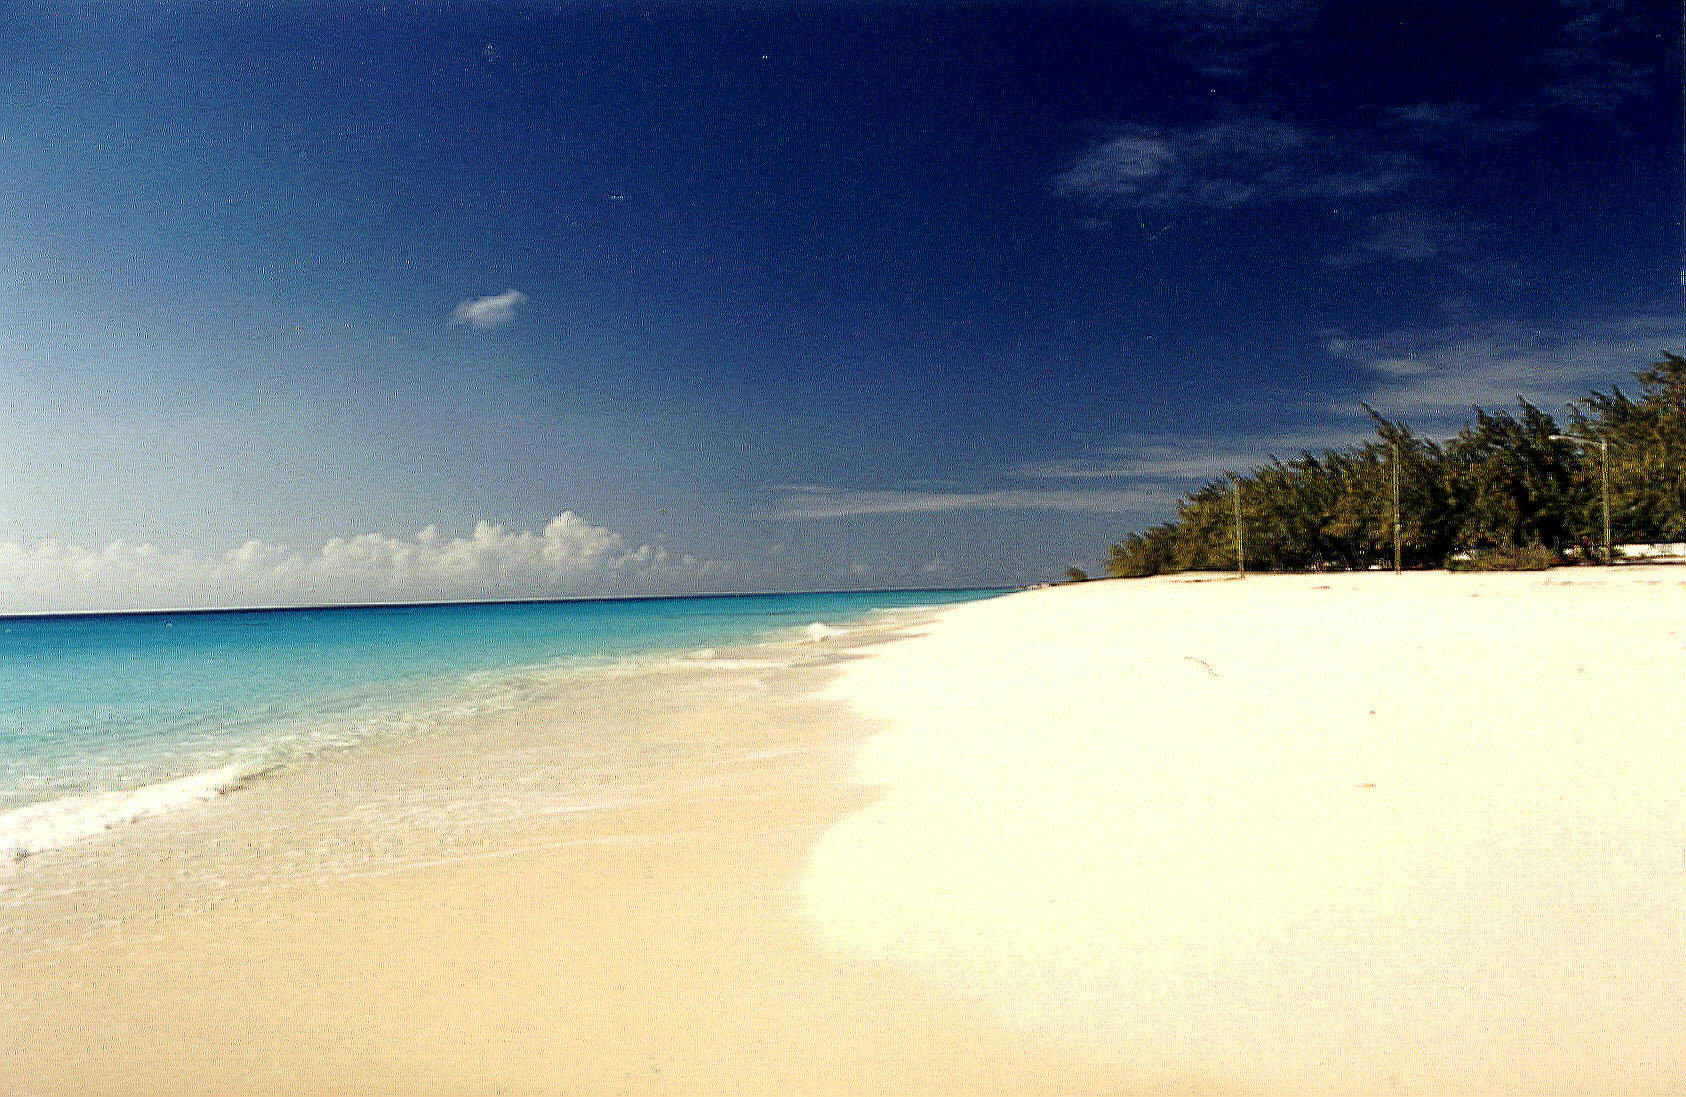 Governor's Beach